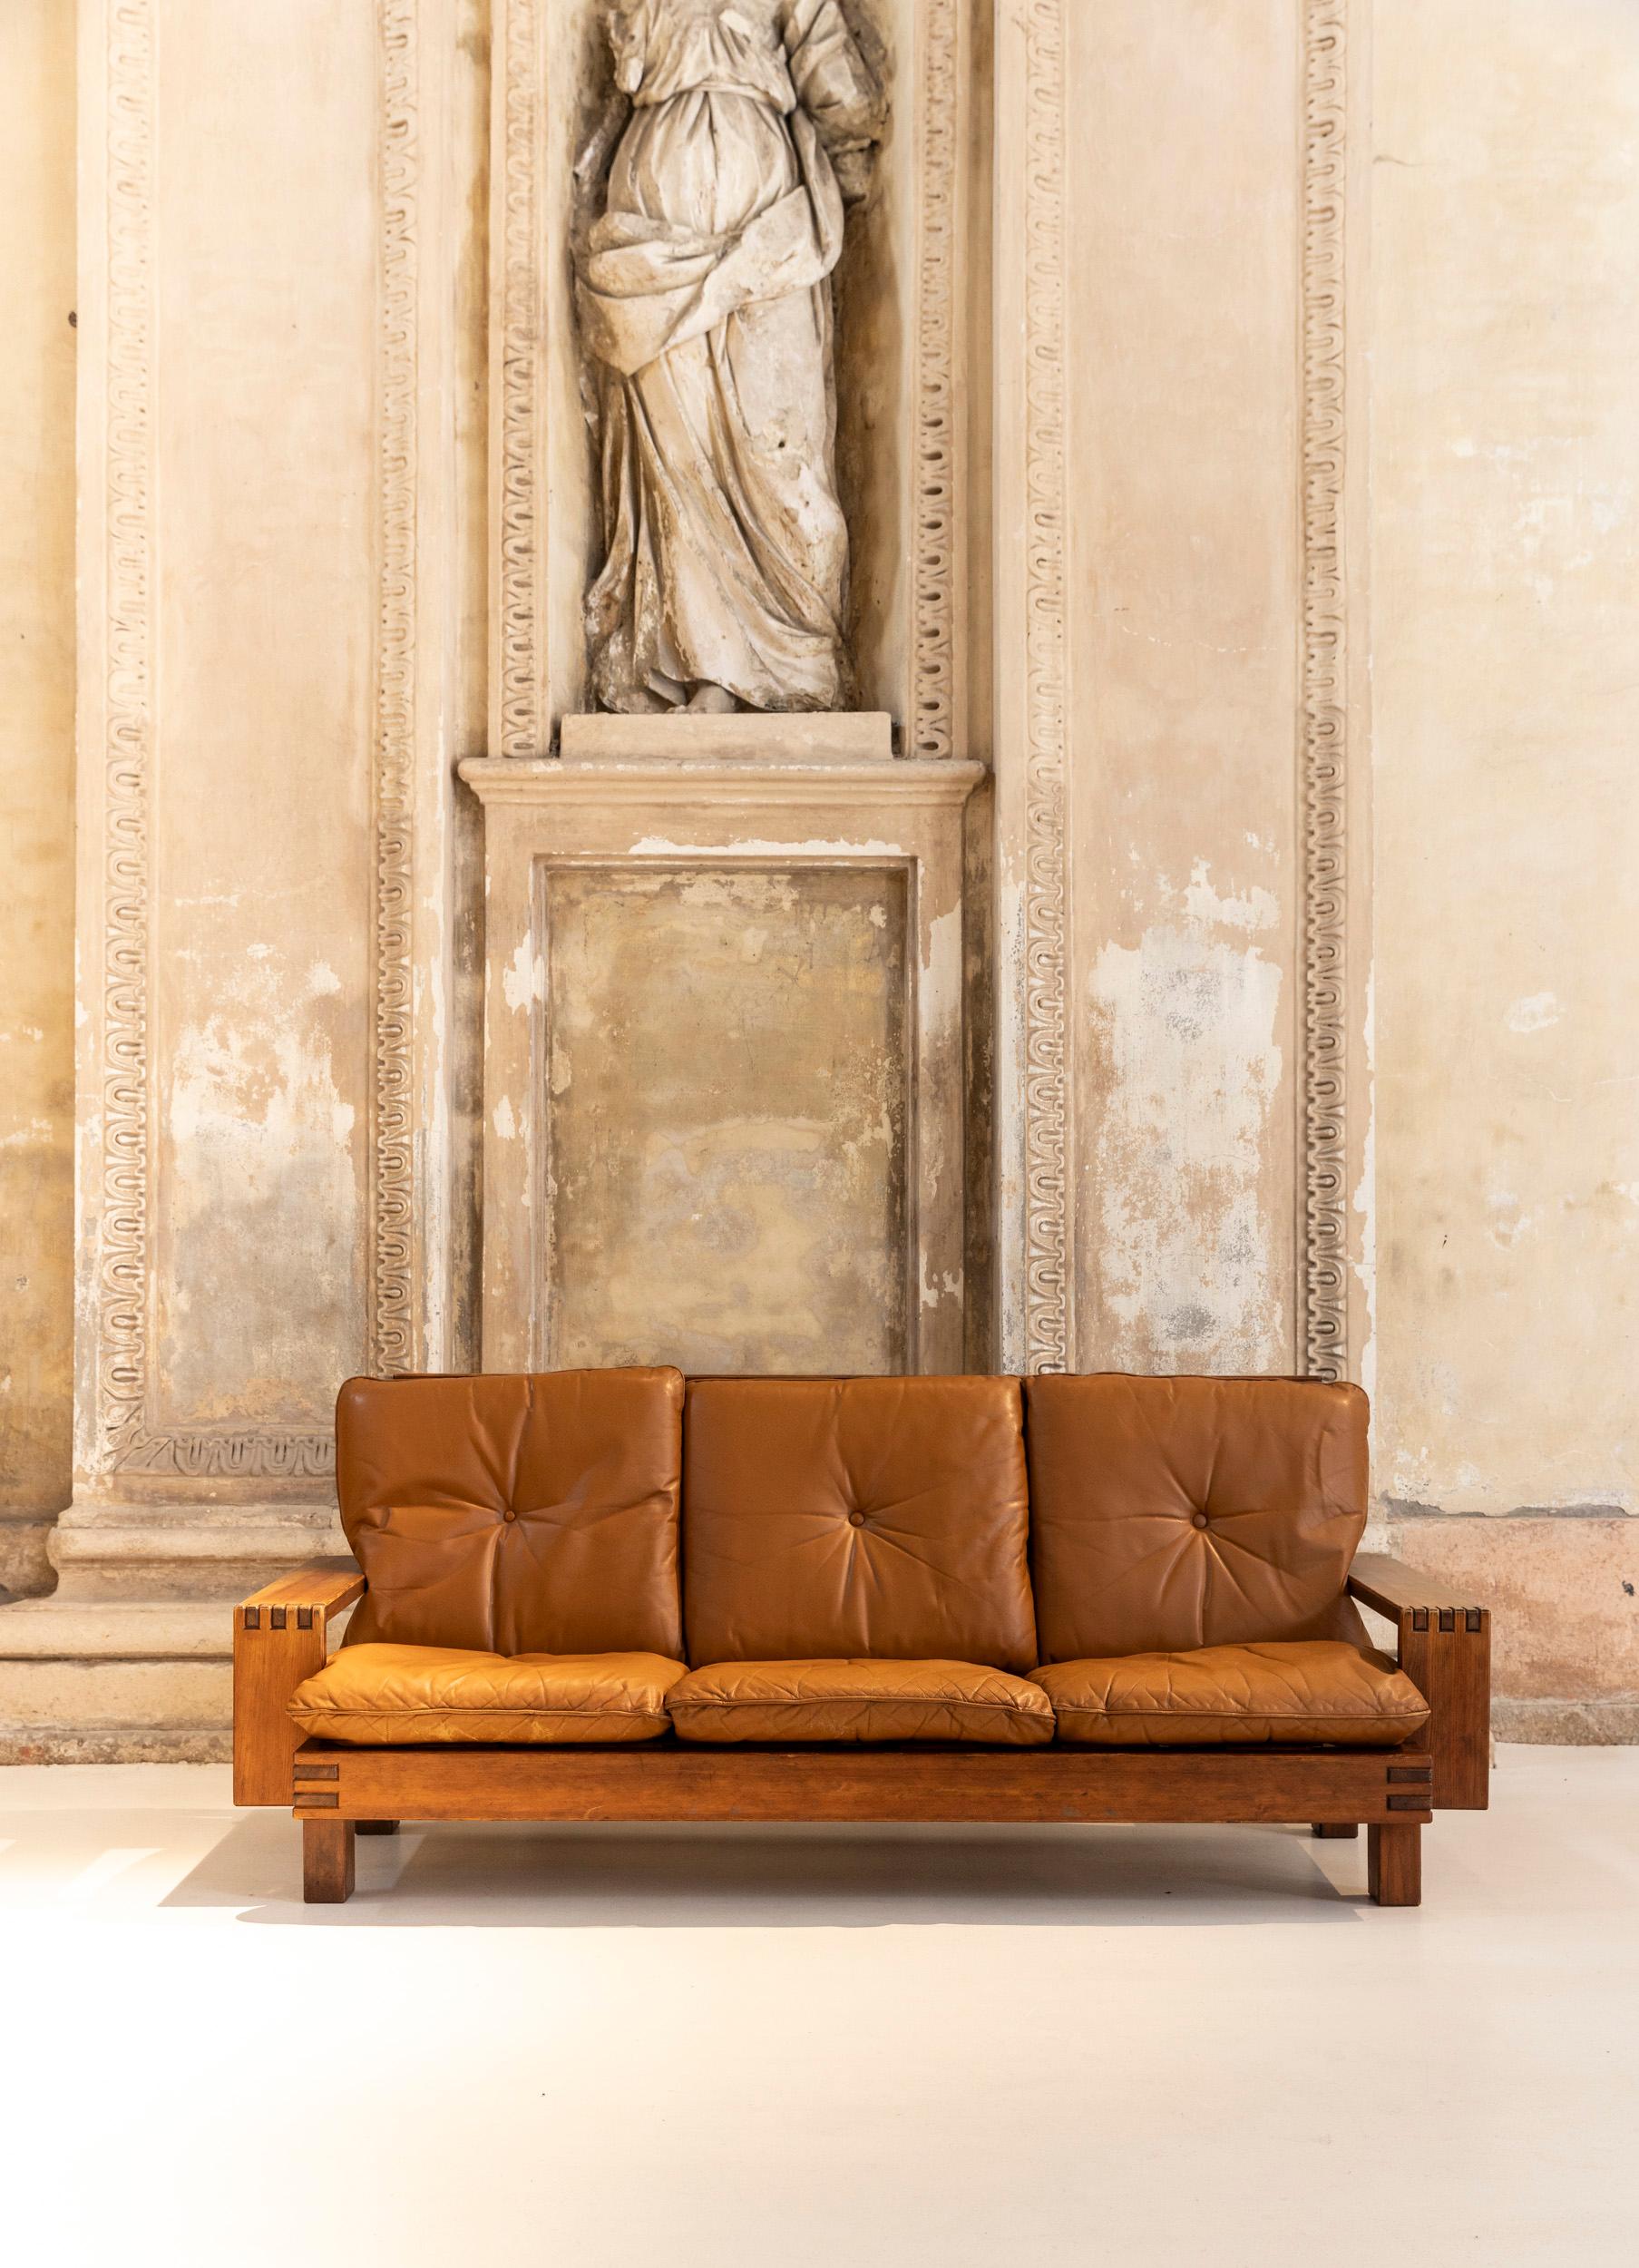 Ikonisches Holzsofa von Giuseppe Rivadossi für Officina Rivadossi. 
Leder gepolstert.
Das Sofa zeigt das hohe Niveau der Handwerkskunst, für die Giuseppe Rivadossi bekannt ist.